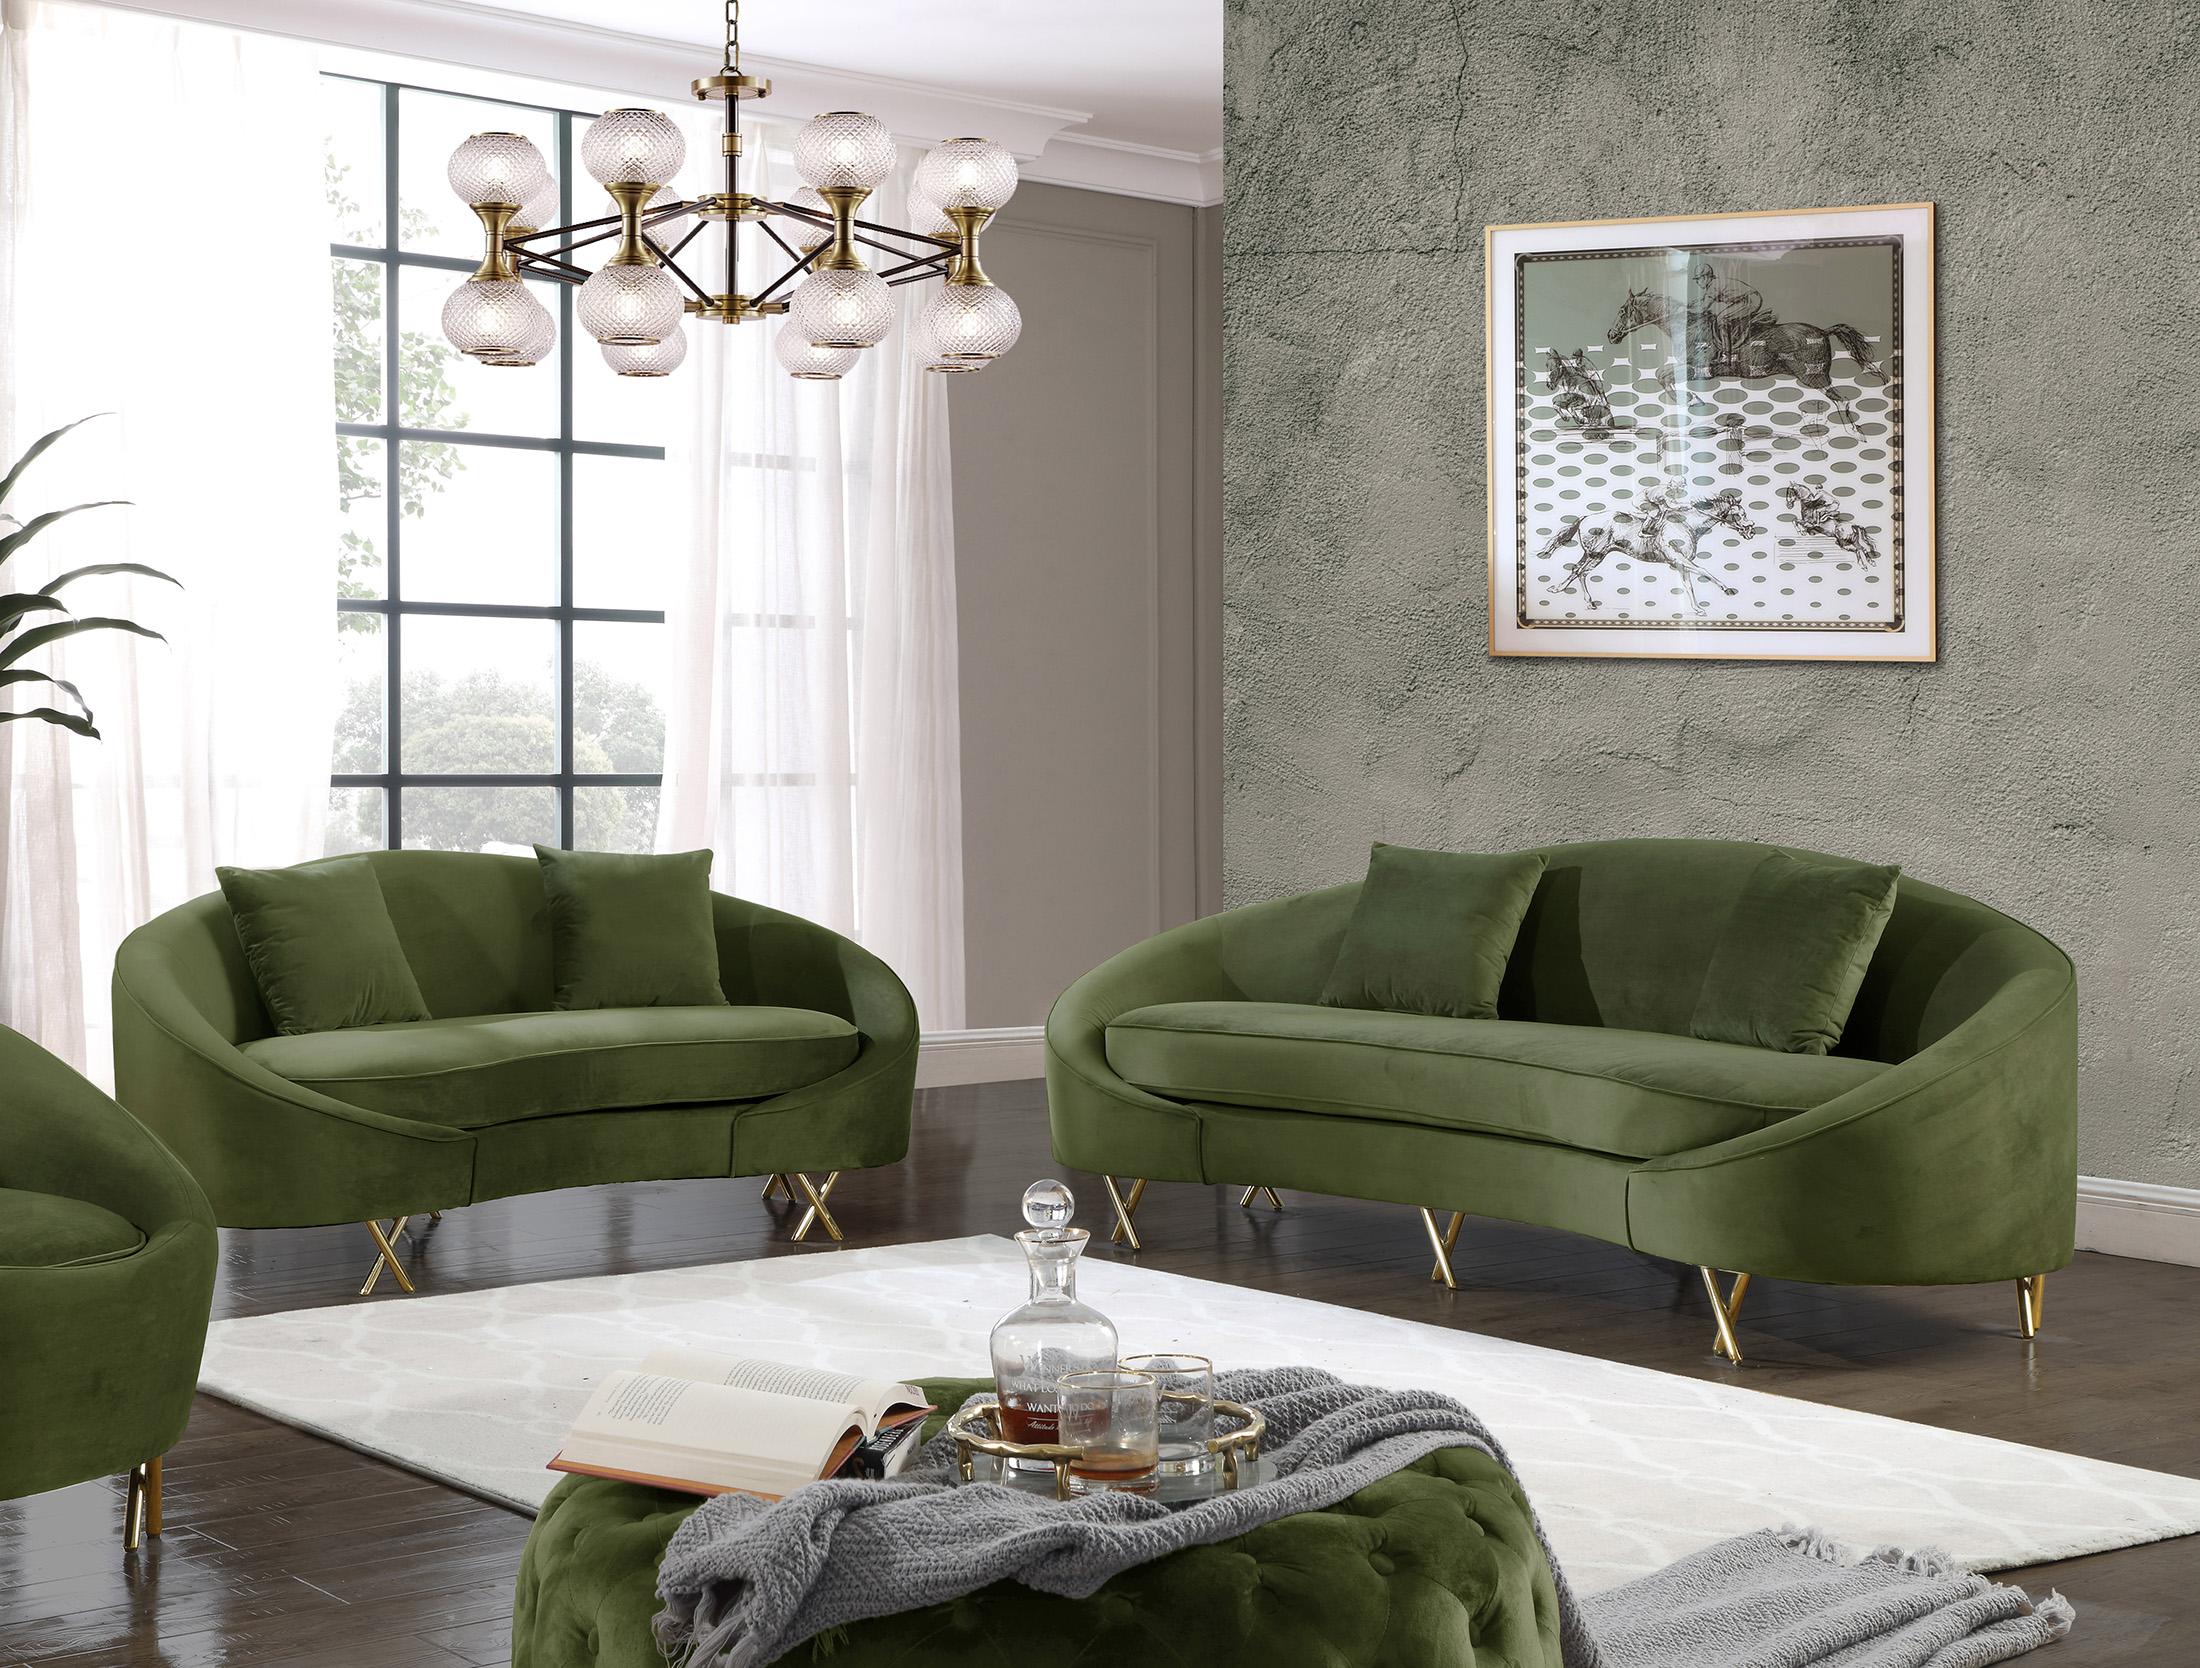 Contemporary, Modern Sofa Set SERPENTINE 679Olive-S-Set-2 679Olive-S-Set-2 in Olive Velvet